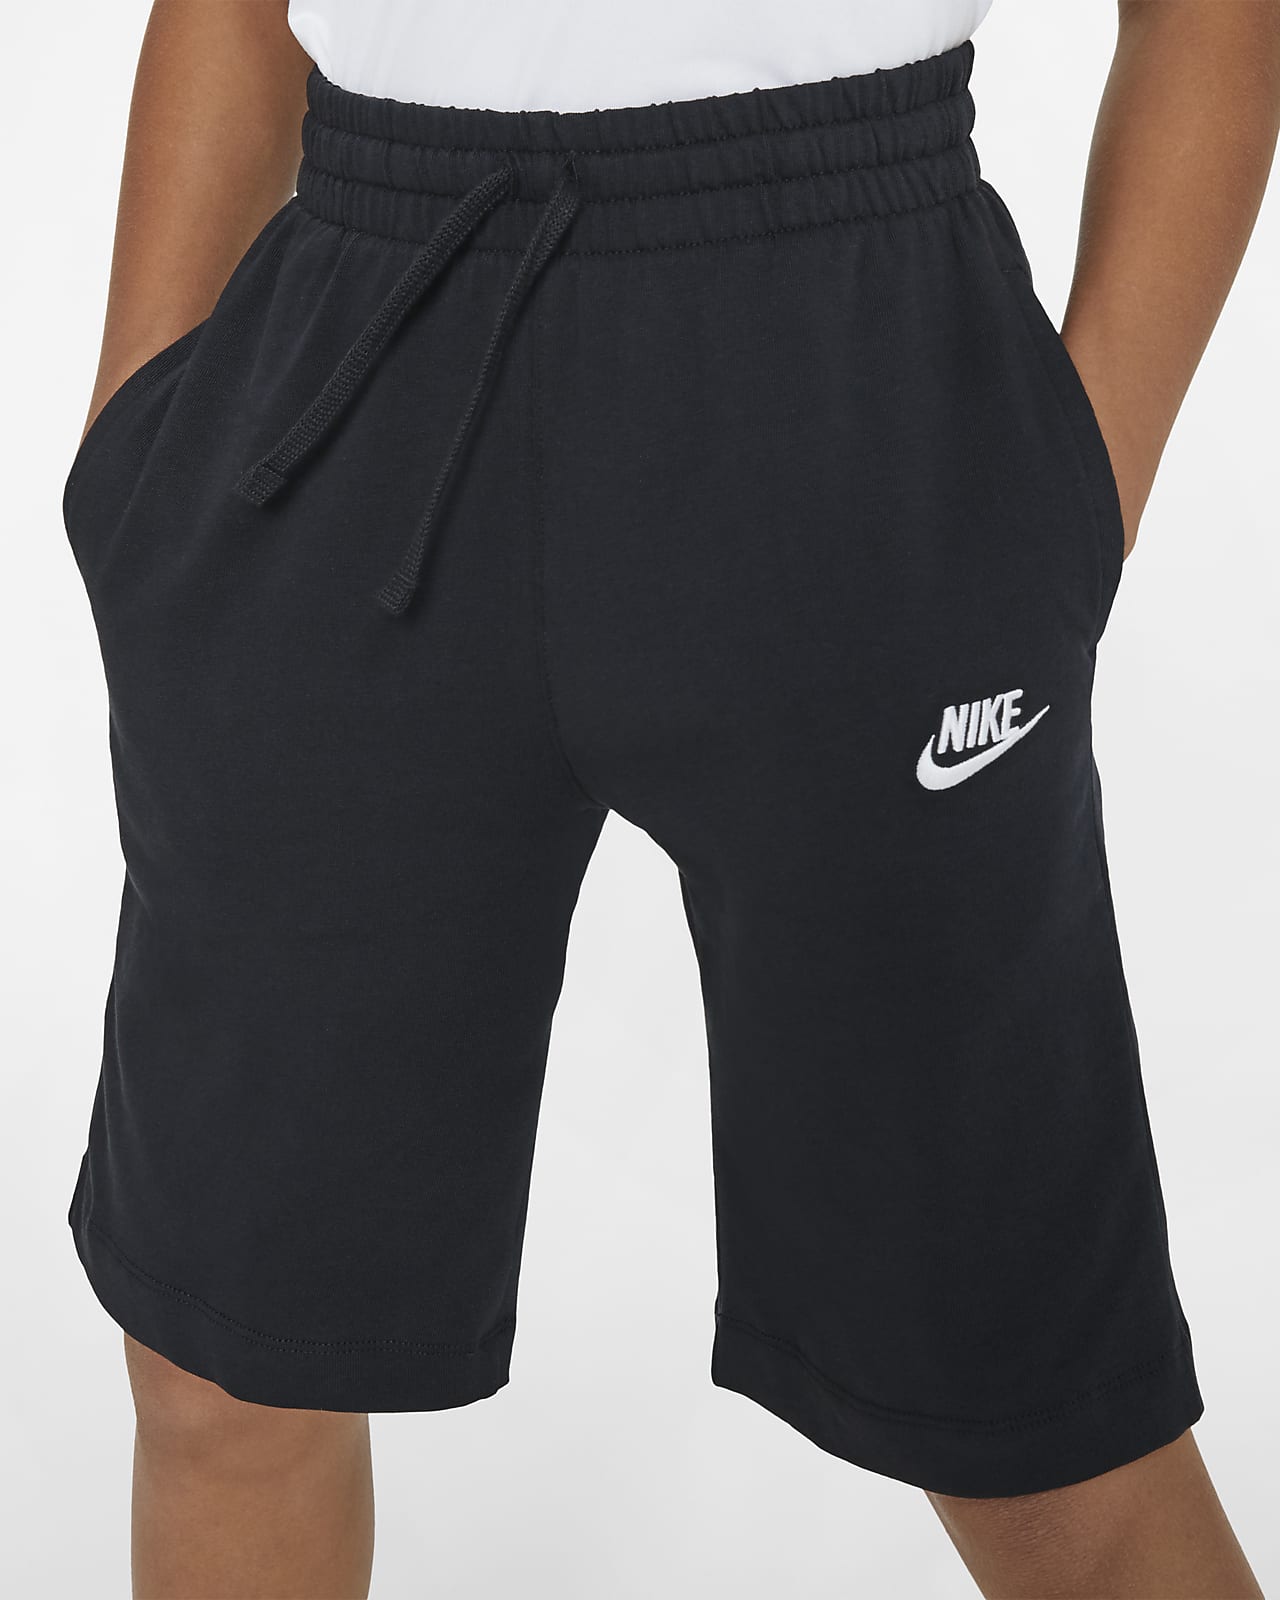 youth large nike shorts